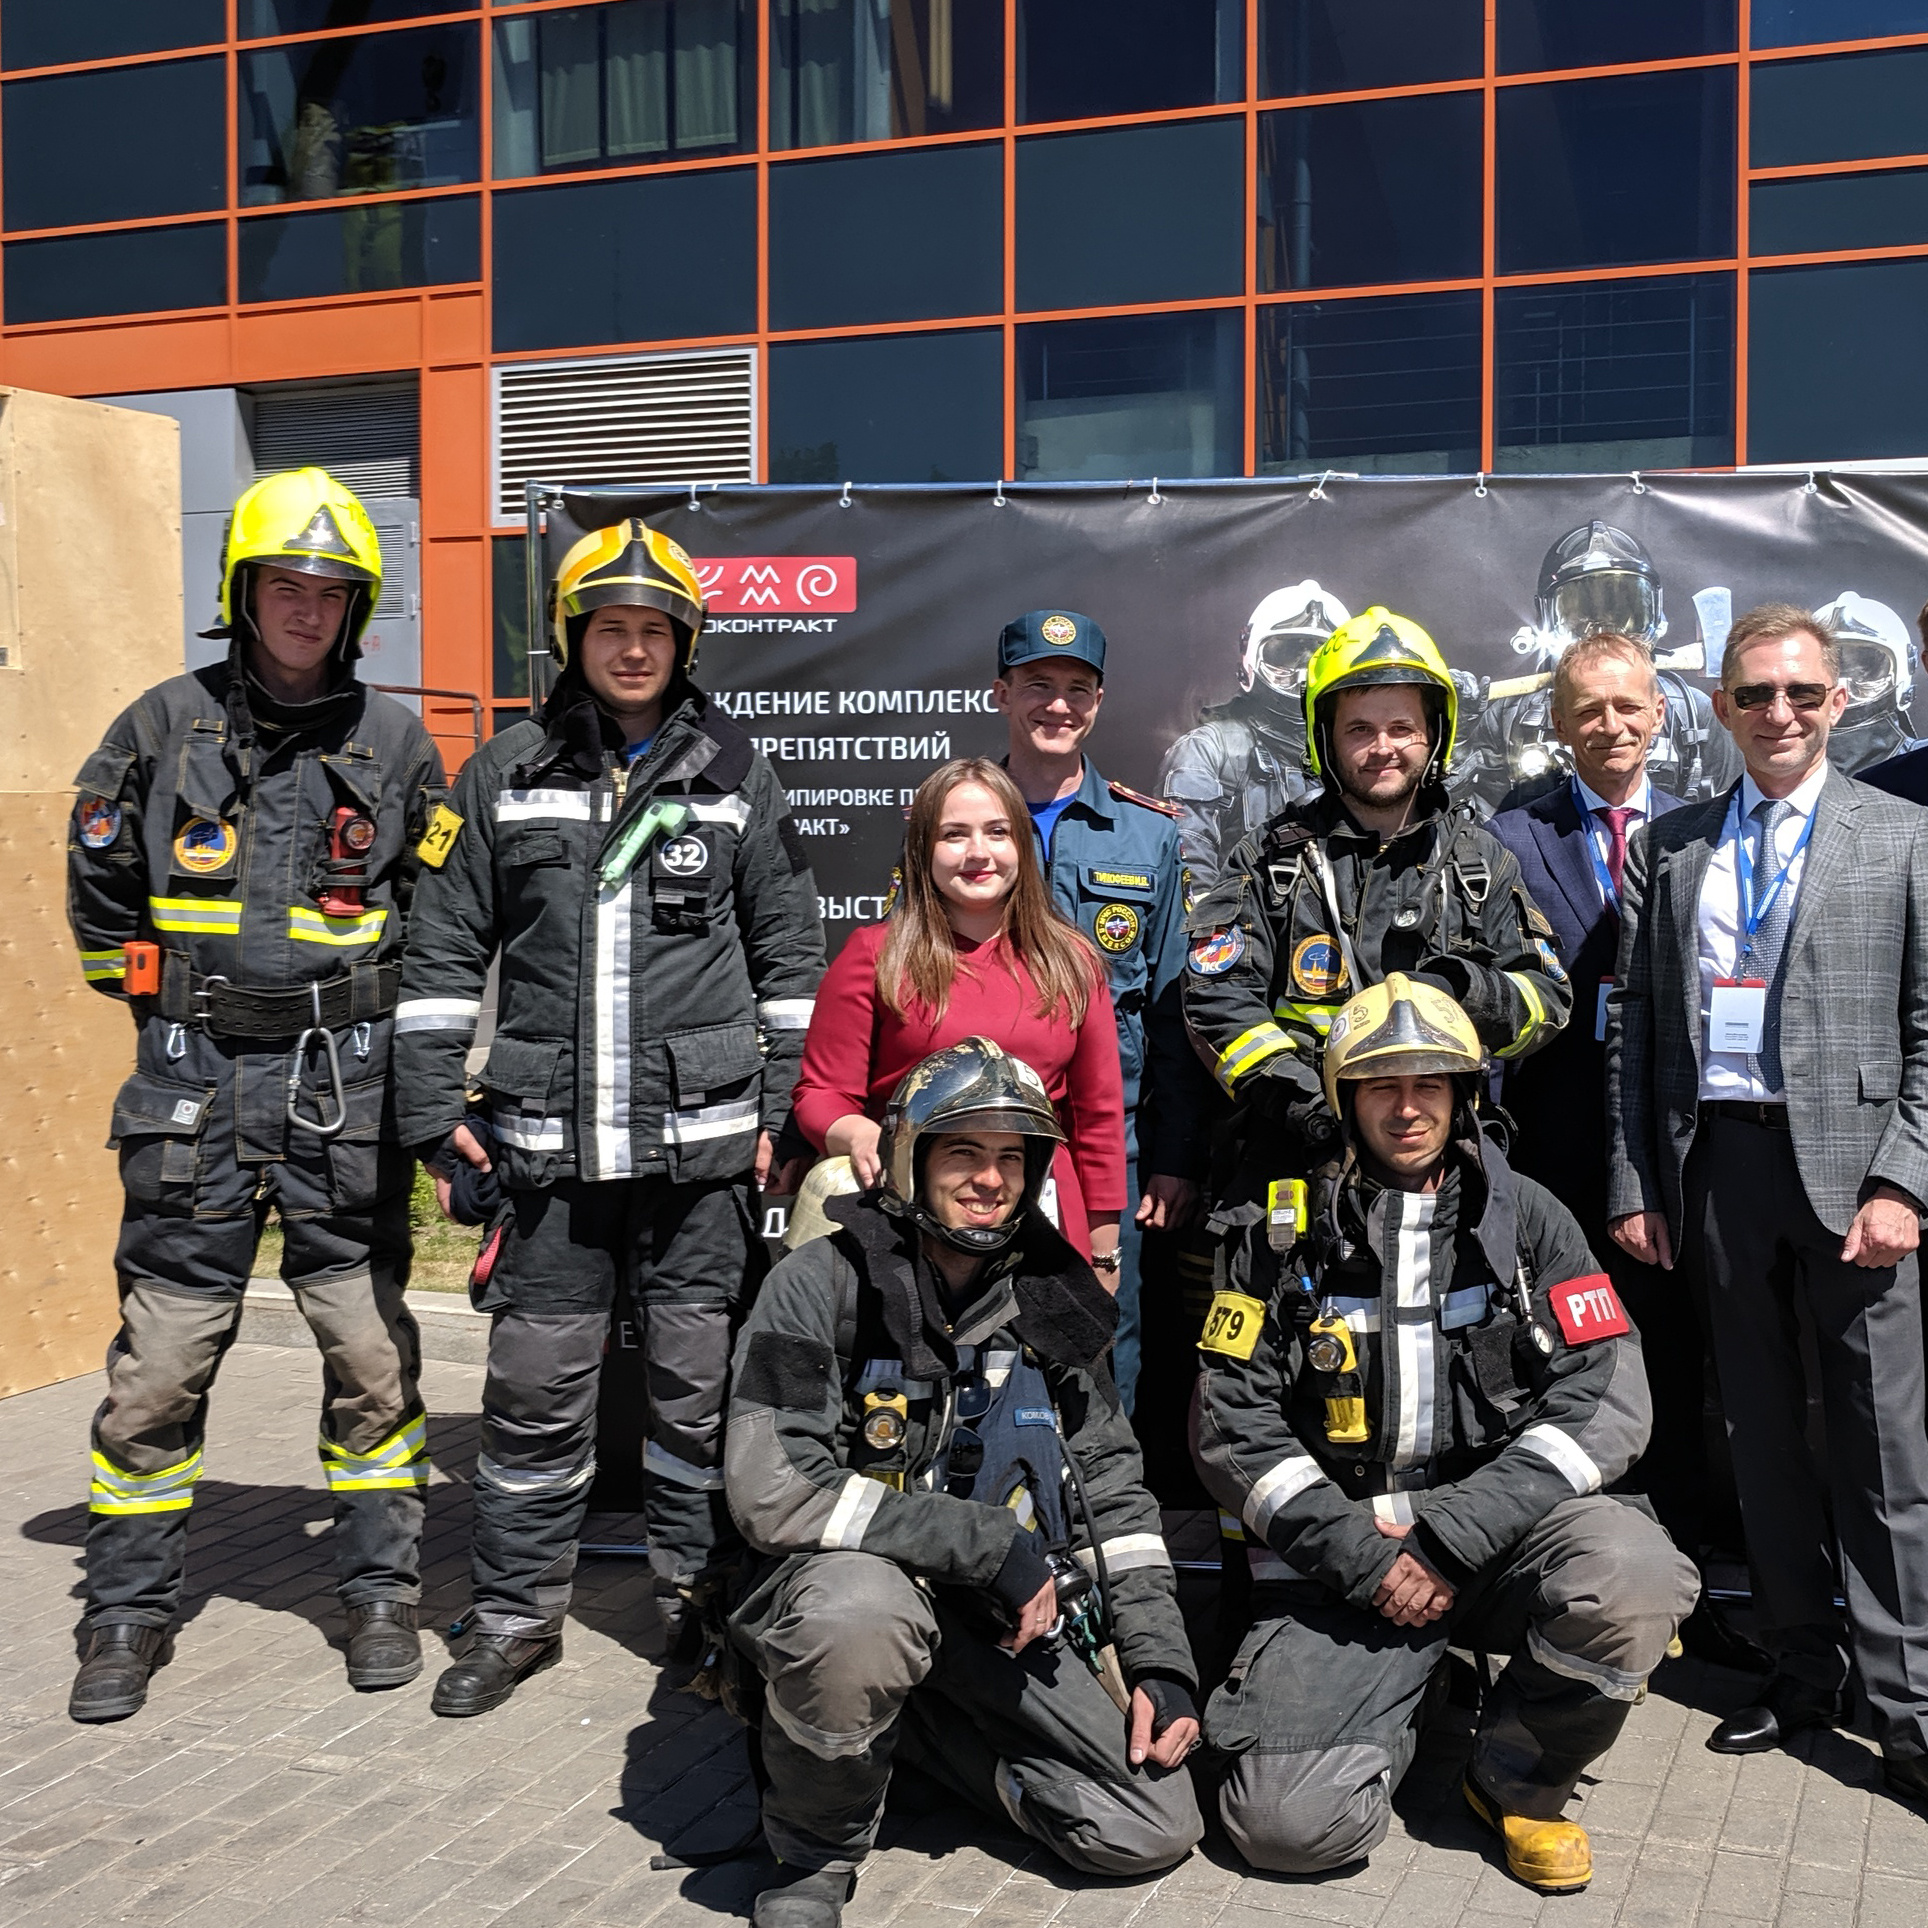 «Энергоконтракт» представит новую пожарно-спасательную экипировку на выставке «Комплексная безопасность — 2021»